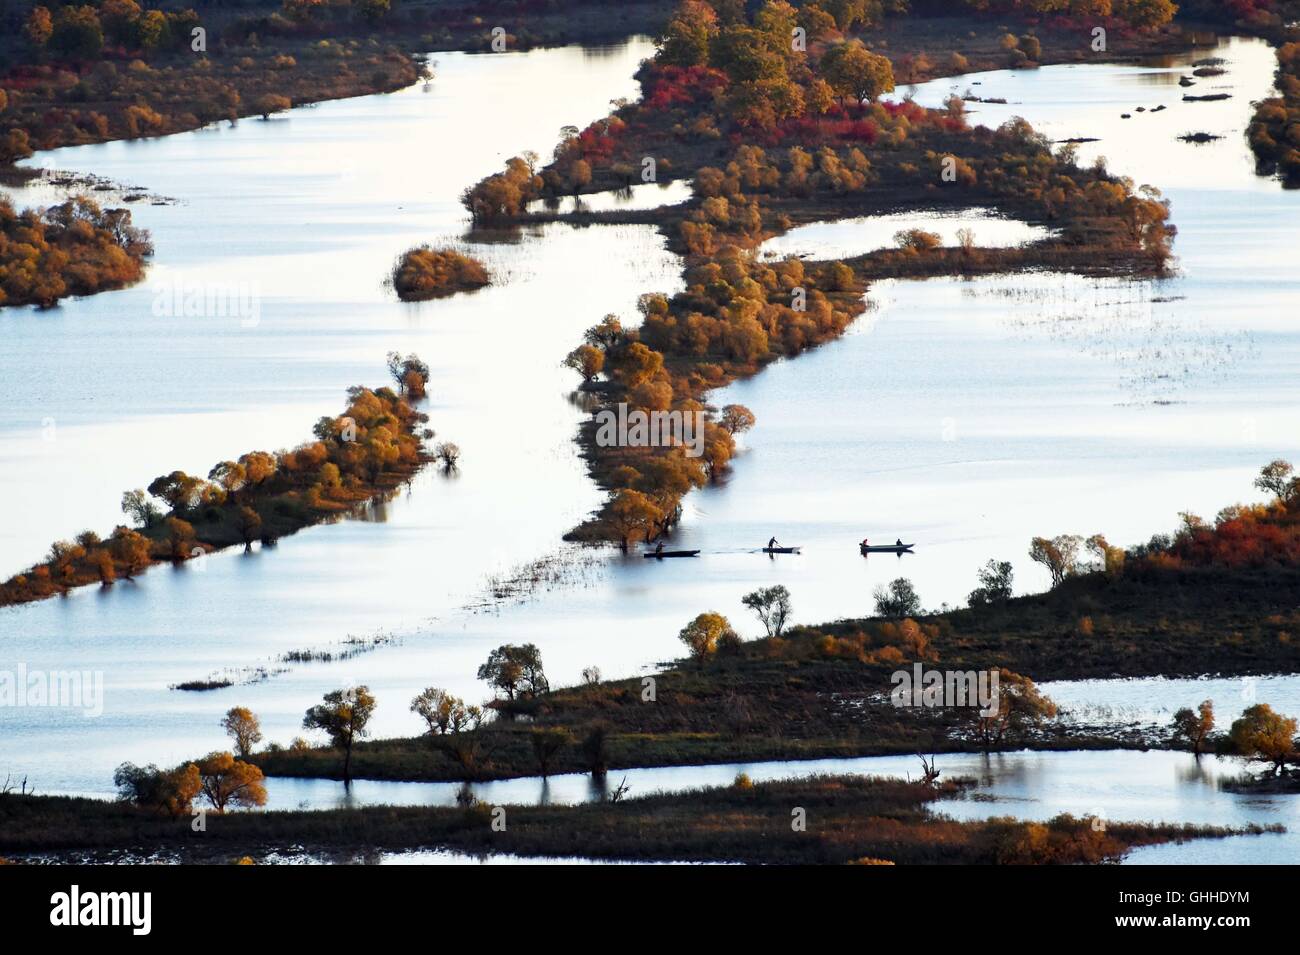 Hulin. 28 Sep, 2016. Photo prise le 28 septembre 2016 présente le paysage de la zone humide de l'Île Zhenbao Hulin, au nord-est de la province de la Chine. Les 29 275 hectares de zone humide a été désignée comme zone humide d'importance internationale par la Convention de Ramsar en 2011 pour son importance vitale, car c'est un marais unique pour la diversité biologique. © Wang Jianwei/Xinhua/Alamy Live News Banque D'Images